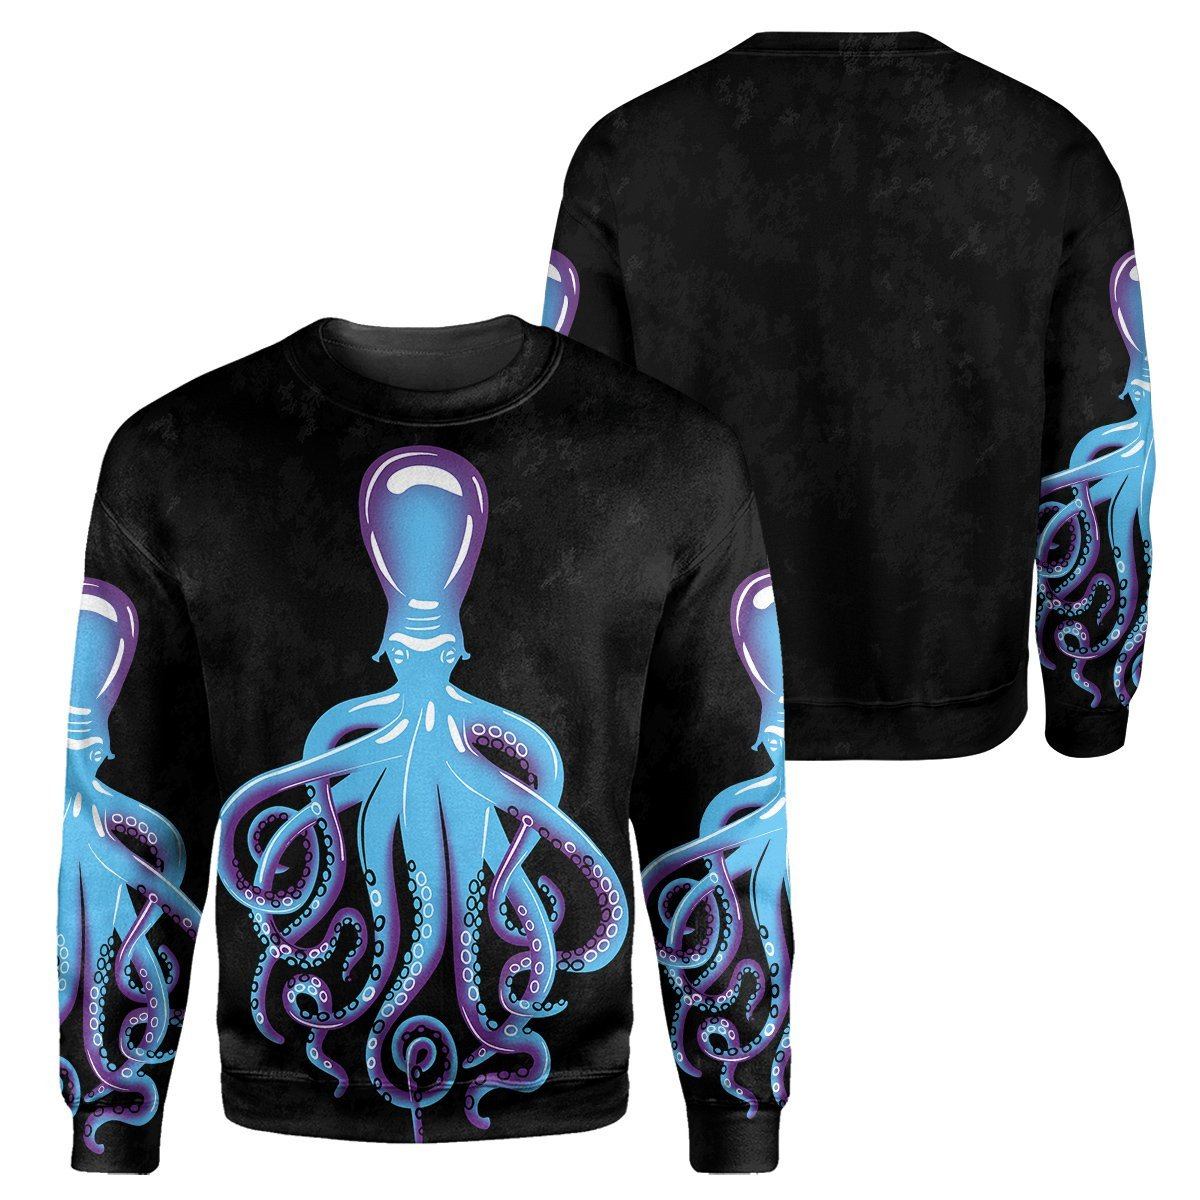 Gearhumans Octopus Scuba Diving - 3D All Over Printed Shirt shirt 3D Apparel LONG SLEEVE S 